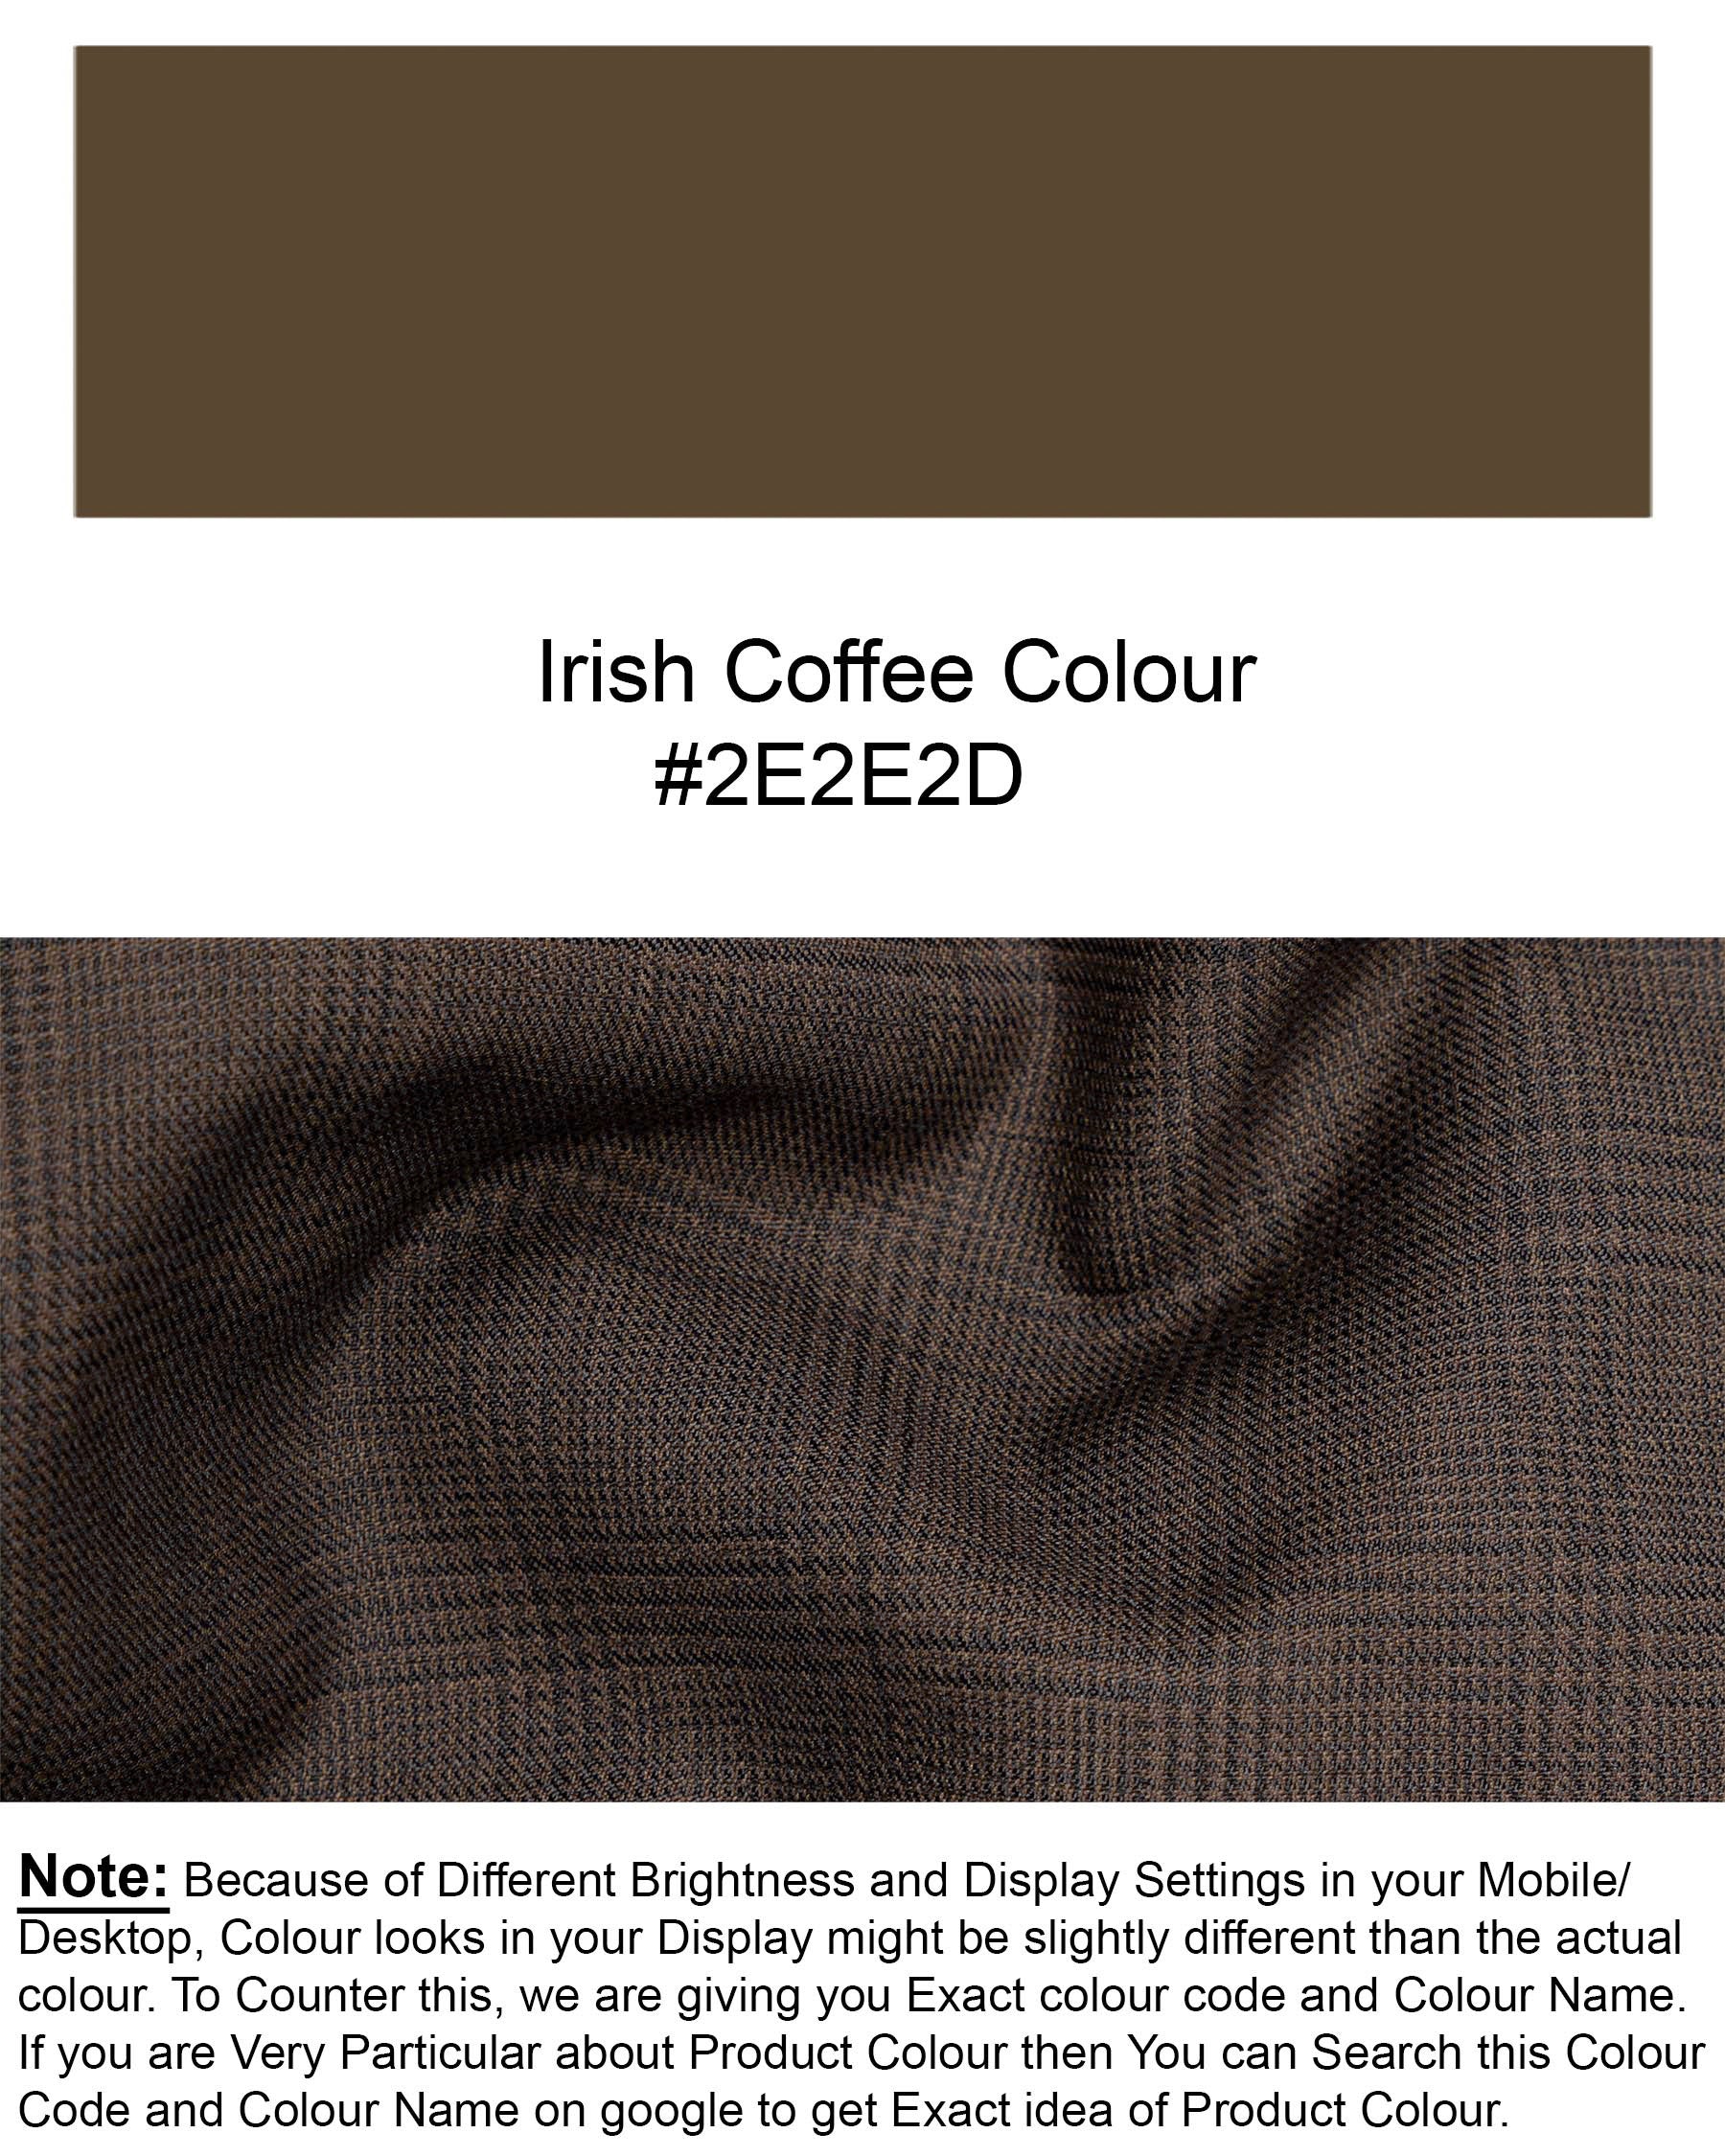 Irish Coffee Brown Plaid Blazer BL1733-SB-36,BL1733-SB-38,BL1733-SB-40,BL1733-SB-42,BL1733-SB-44,BL1733-SB-46,BL1733-SB-48,BL1733-SB-50,BL1733-SB-52,BL1733-SB-54,BL1733-SB-56,BL1733-SB-58,BL1733-SB-60